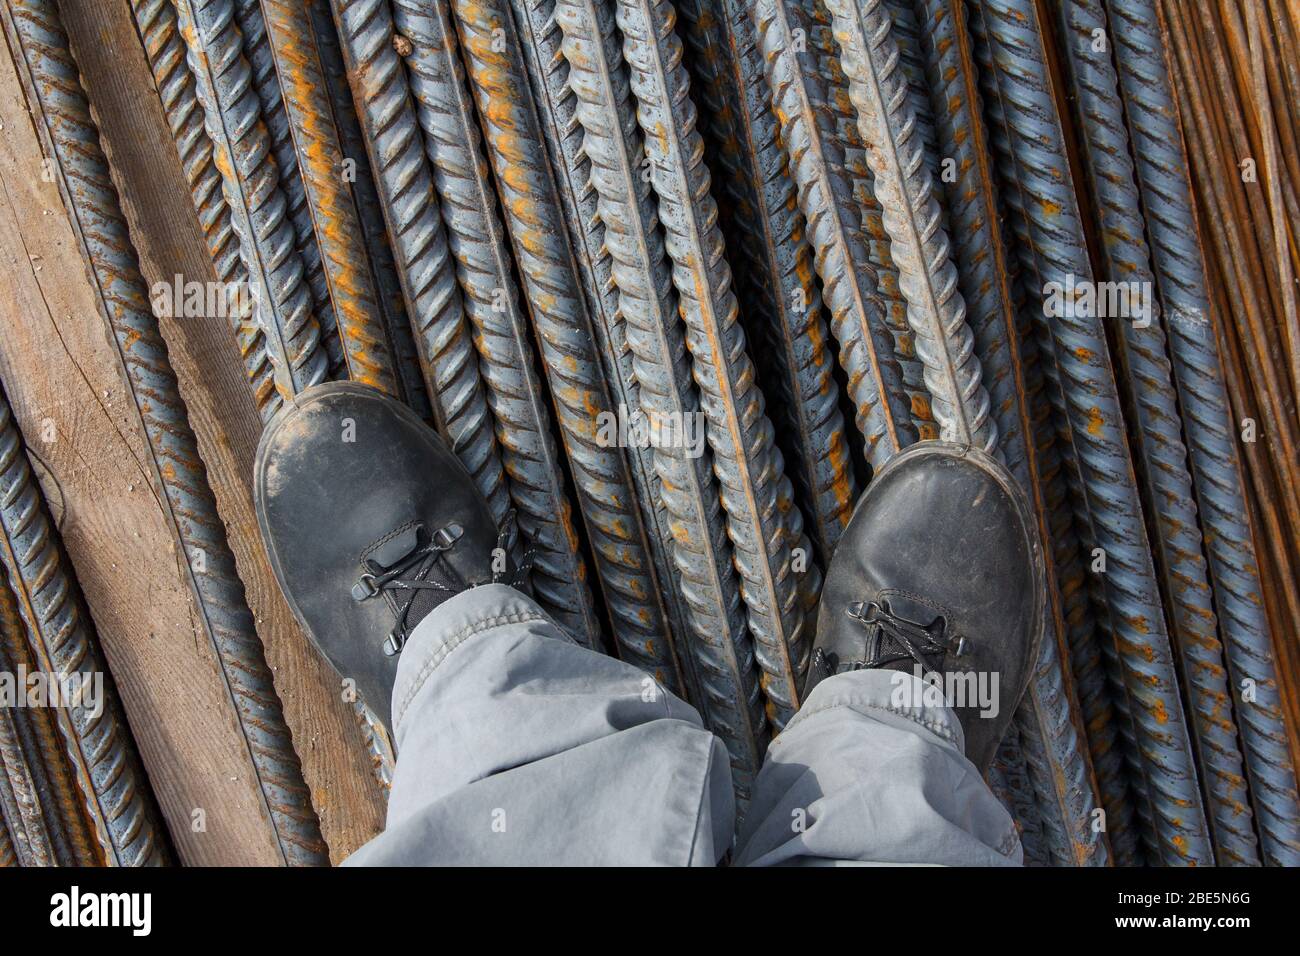 Arbeitsschuhe auf einem Baugrund. Arbeitsschuhe zum Ausgleich der Füße vor Beschädigungen. Arbeitsschutzkleidung auf einer Baustelle. Stockfoto